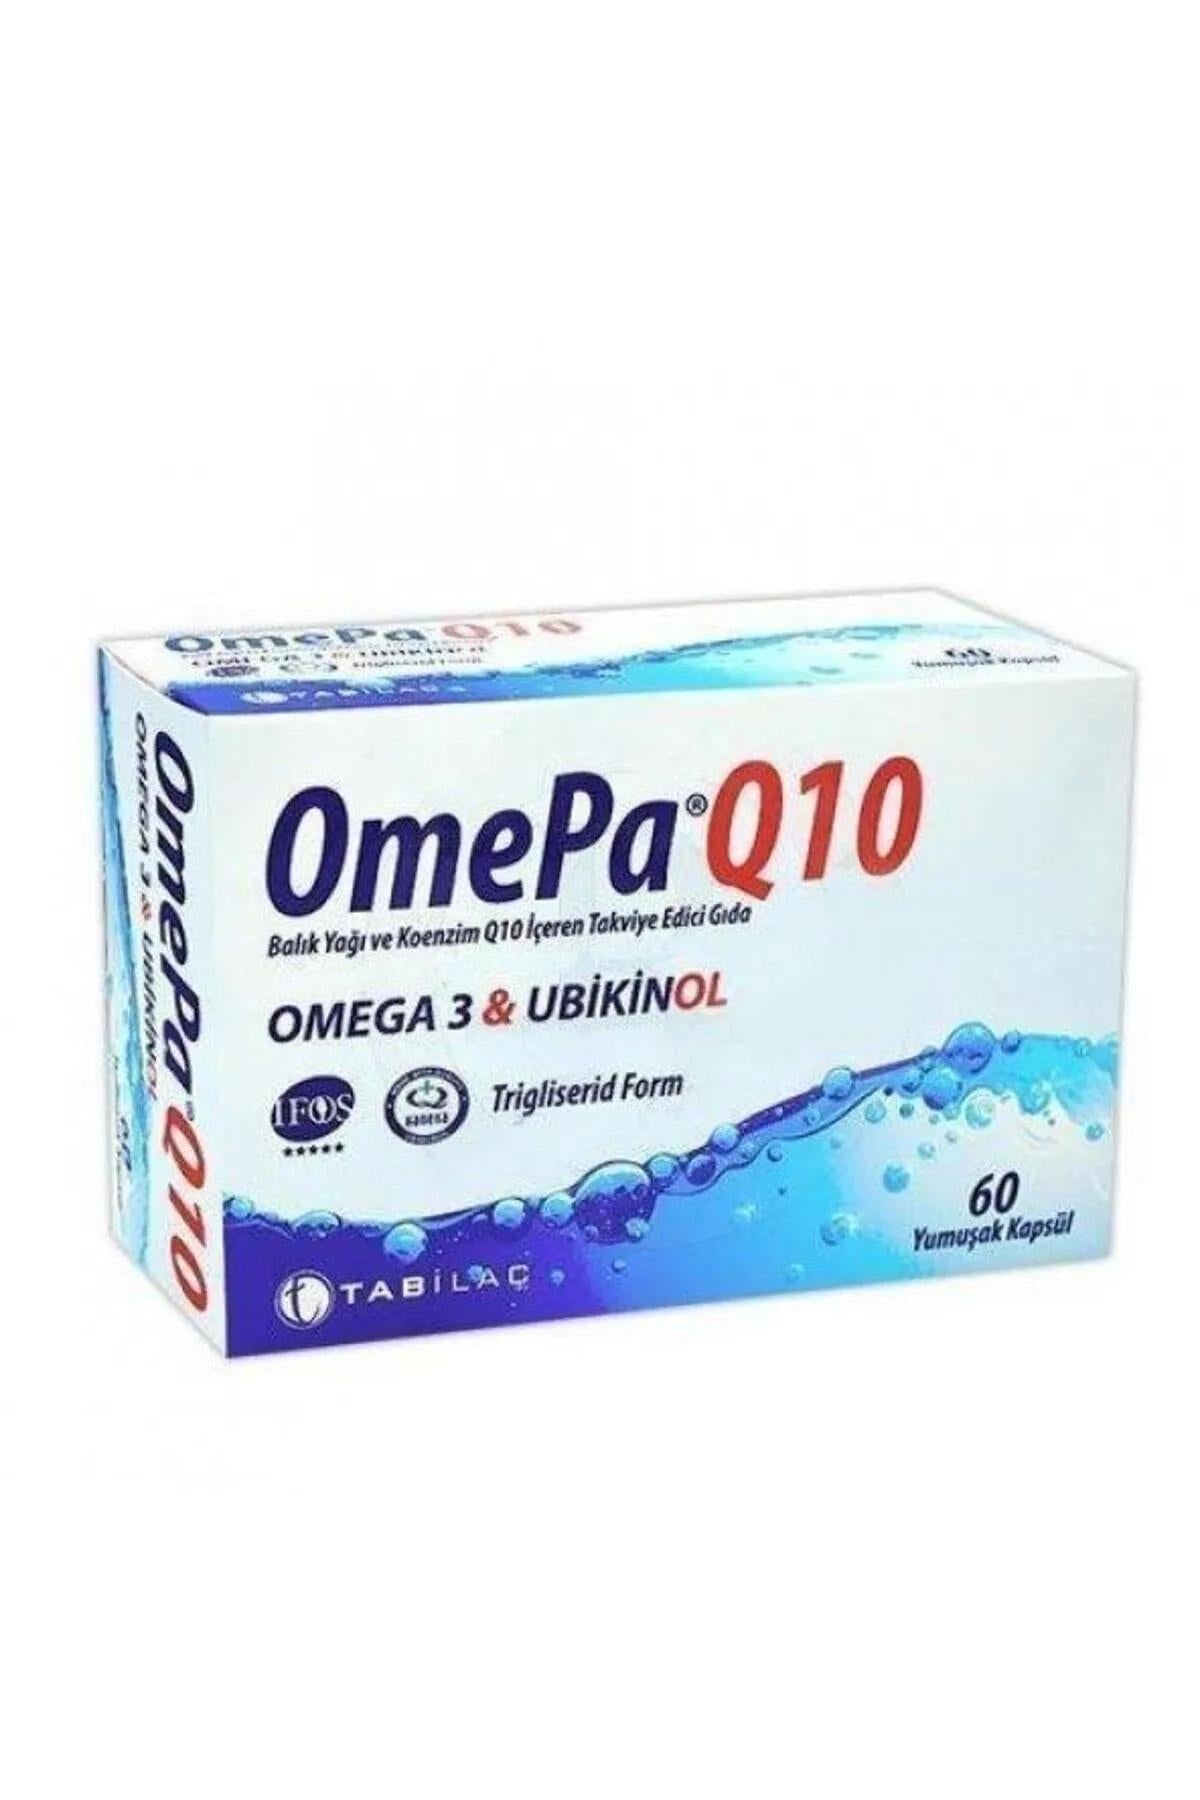 OmePa Q10 Omega 3 Ubiquinol 60 Yumuşak Kapsül